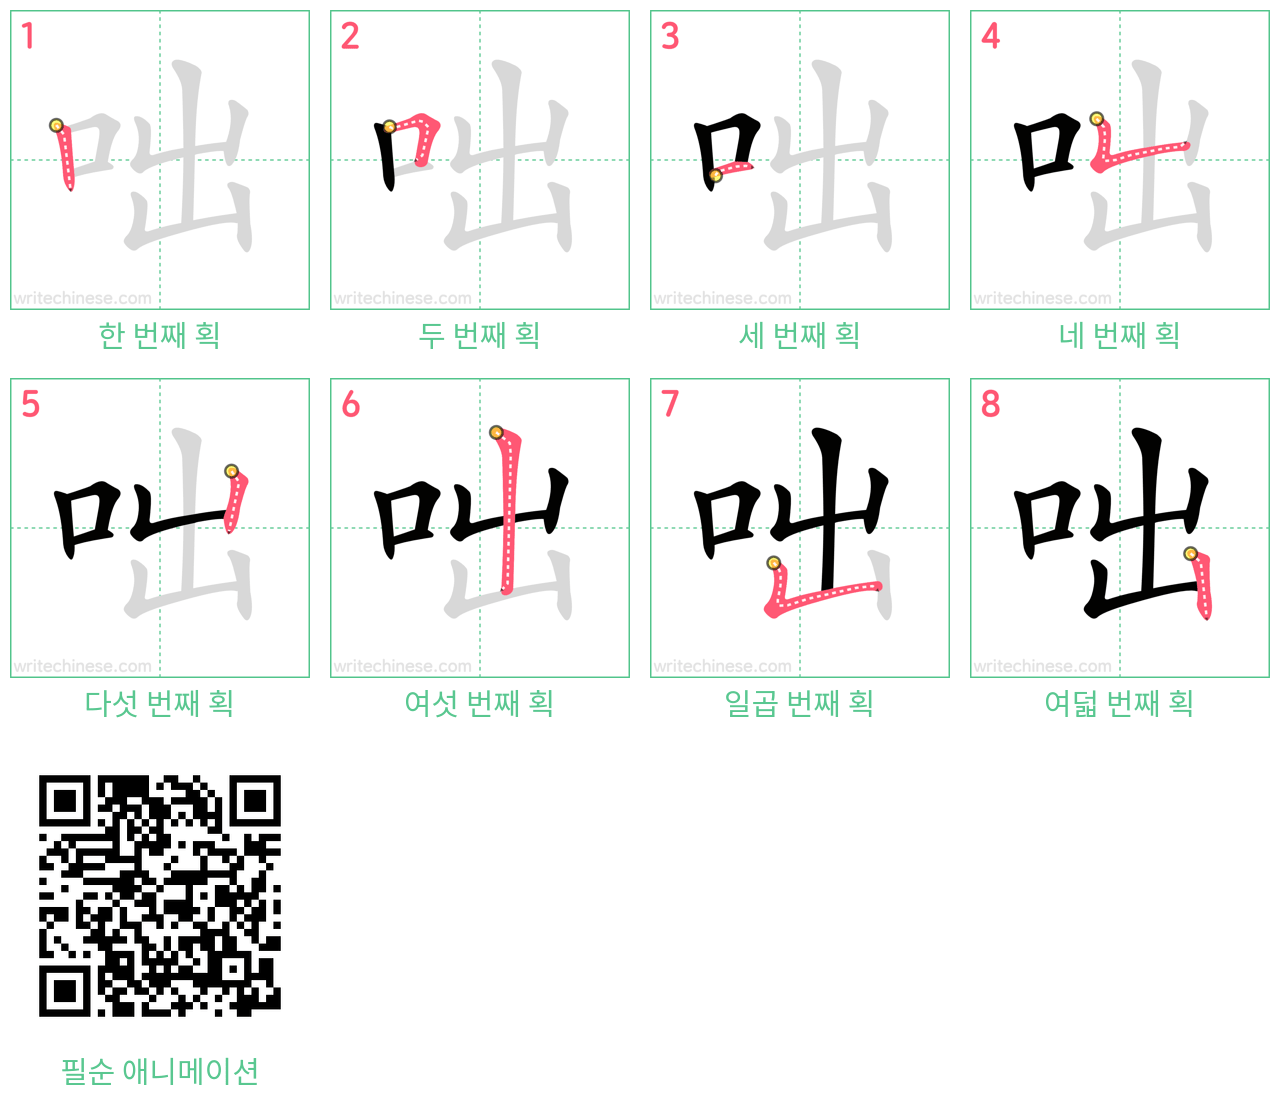 咄 step-by-step stroke order diagrams